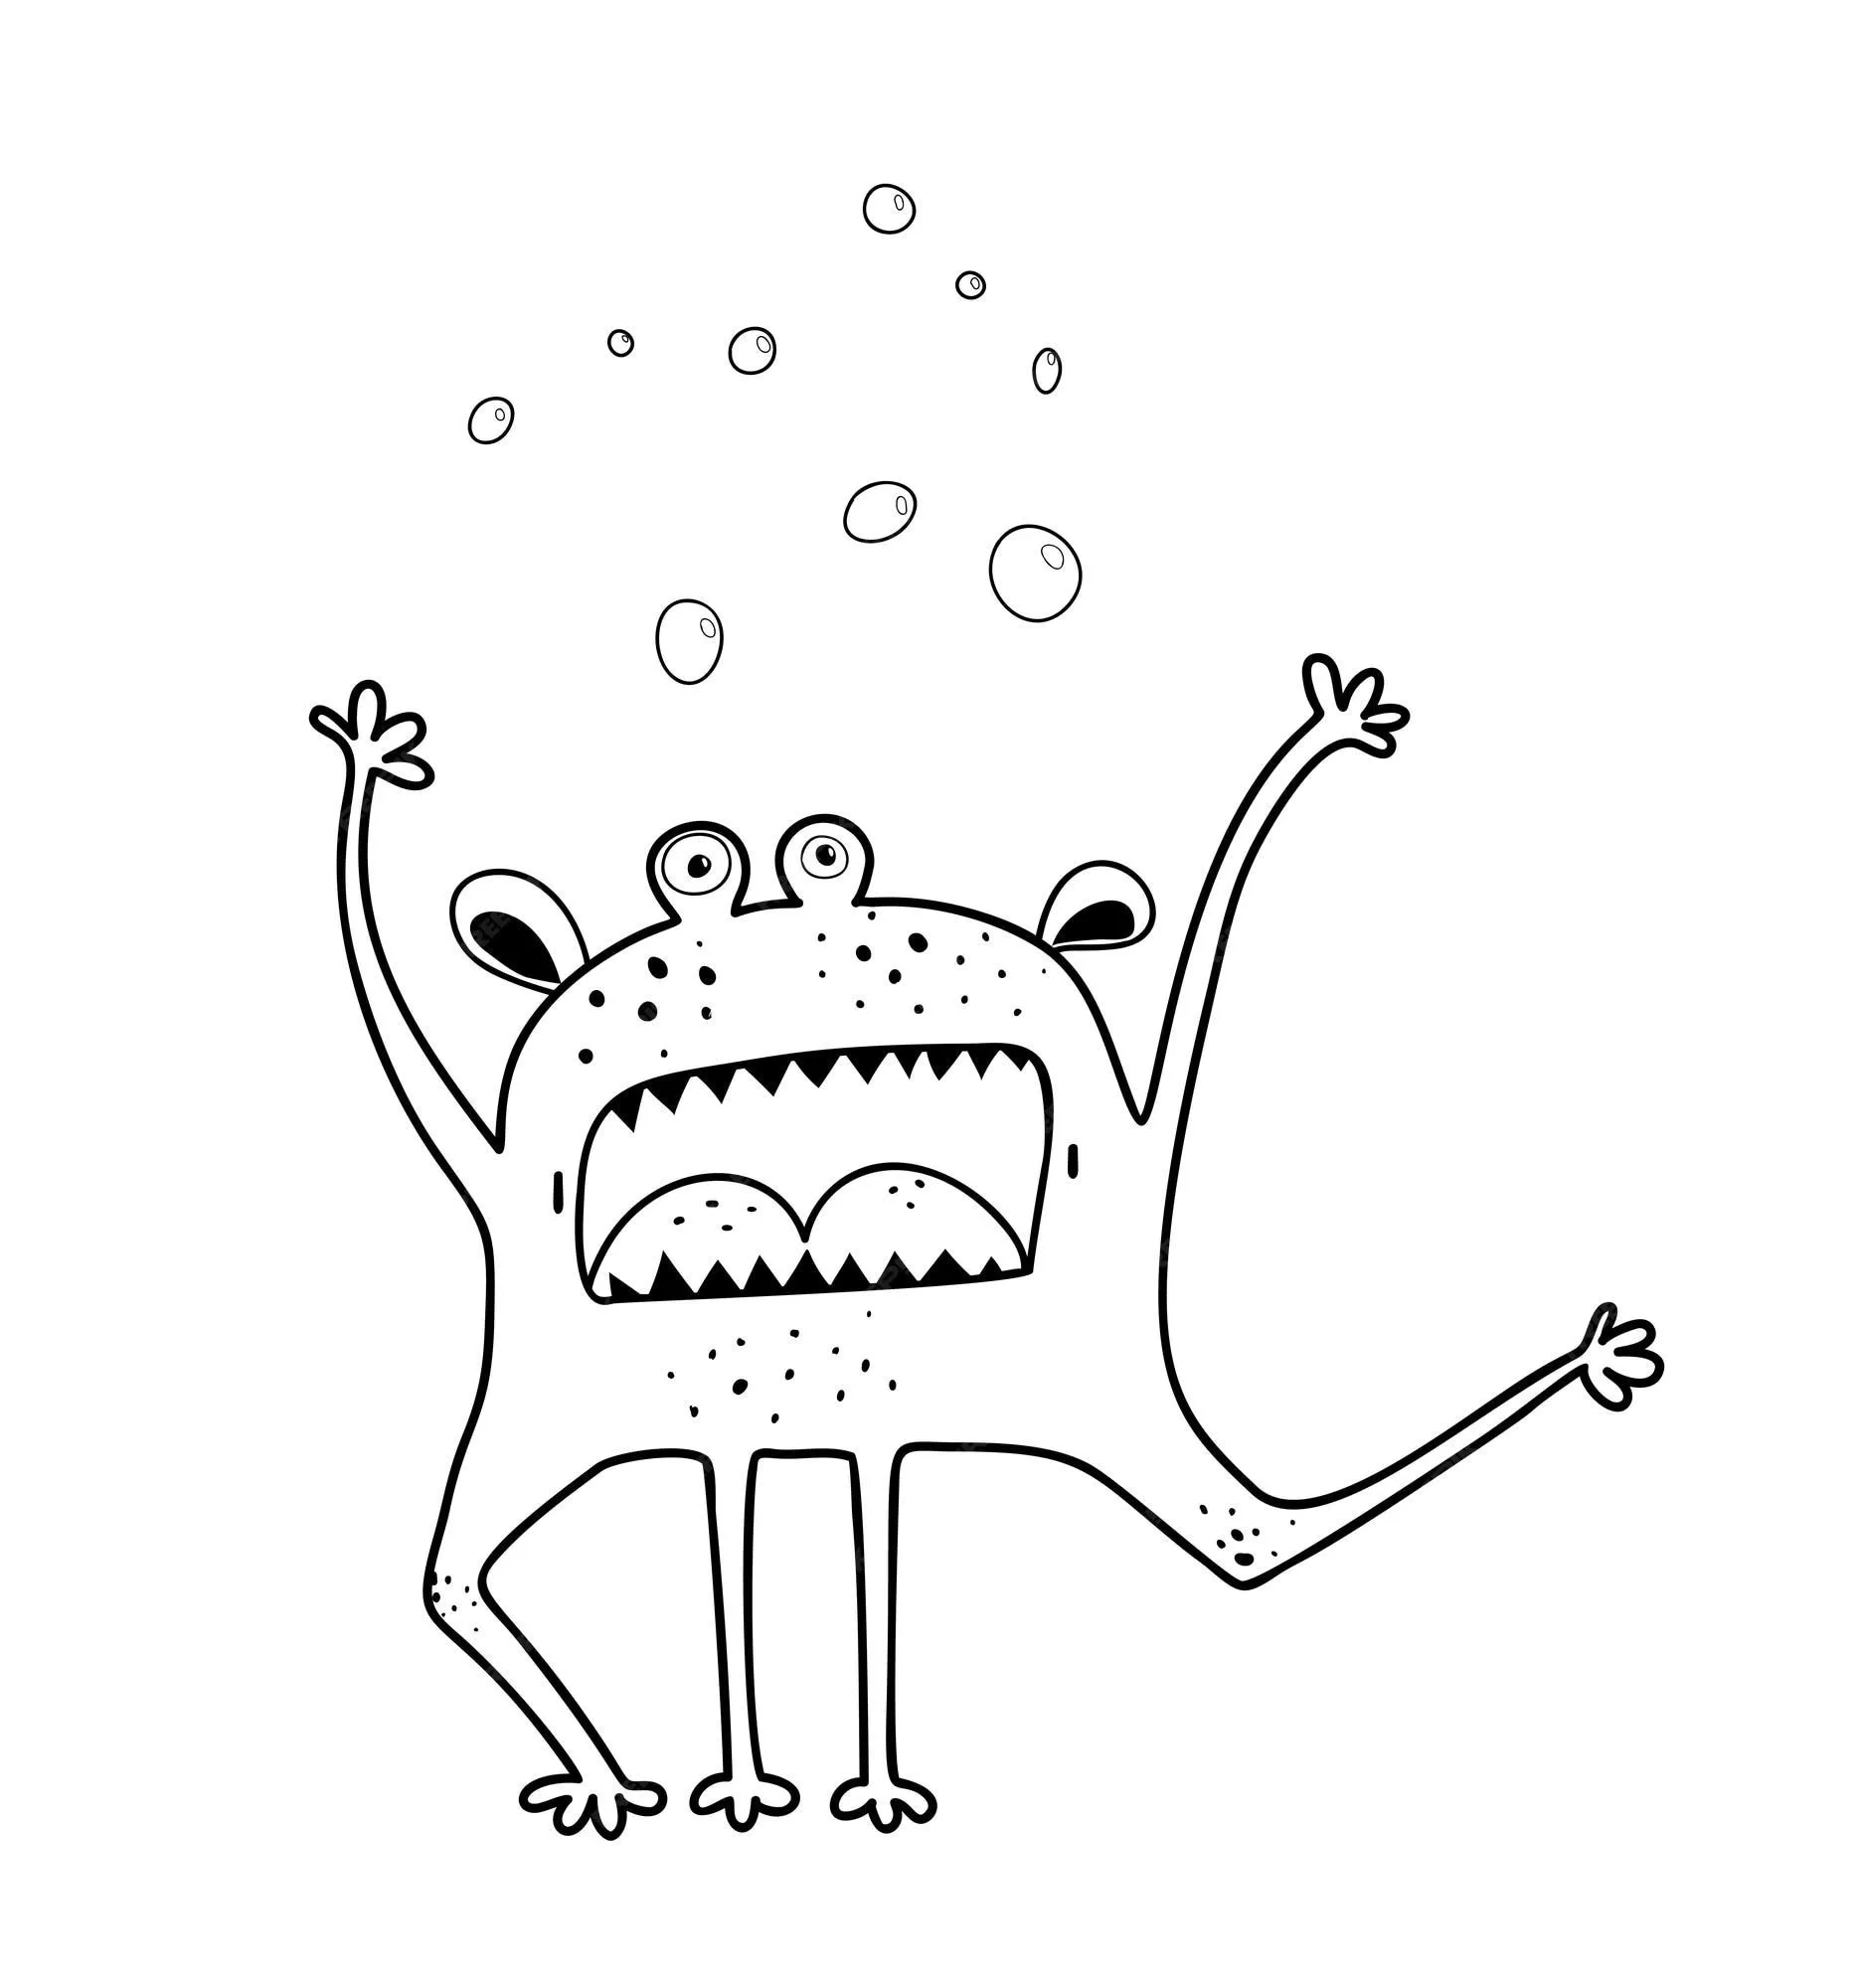 Divertido monstruo aterrador gritando agitando la mano y gritando criatura,  adorable personaje imaginario monocromático para el libro de colorear de  actividades para niños. página para colorear de contorno en blanco y negro.  |